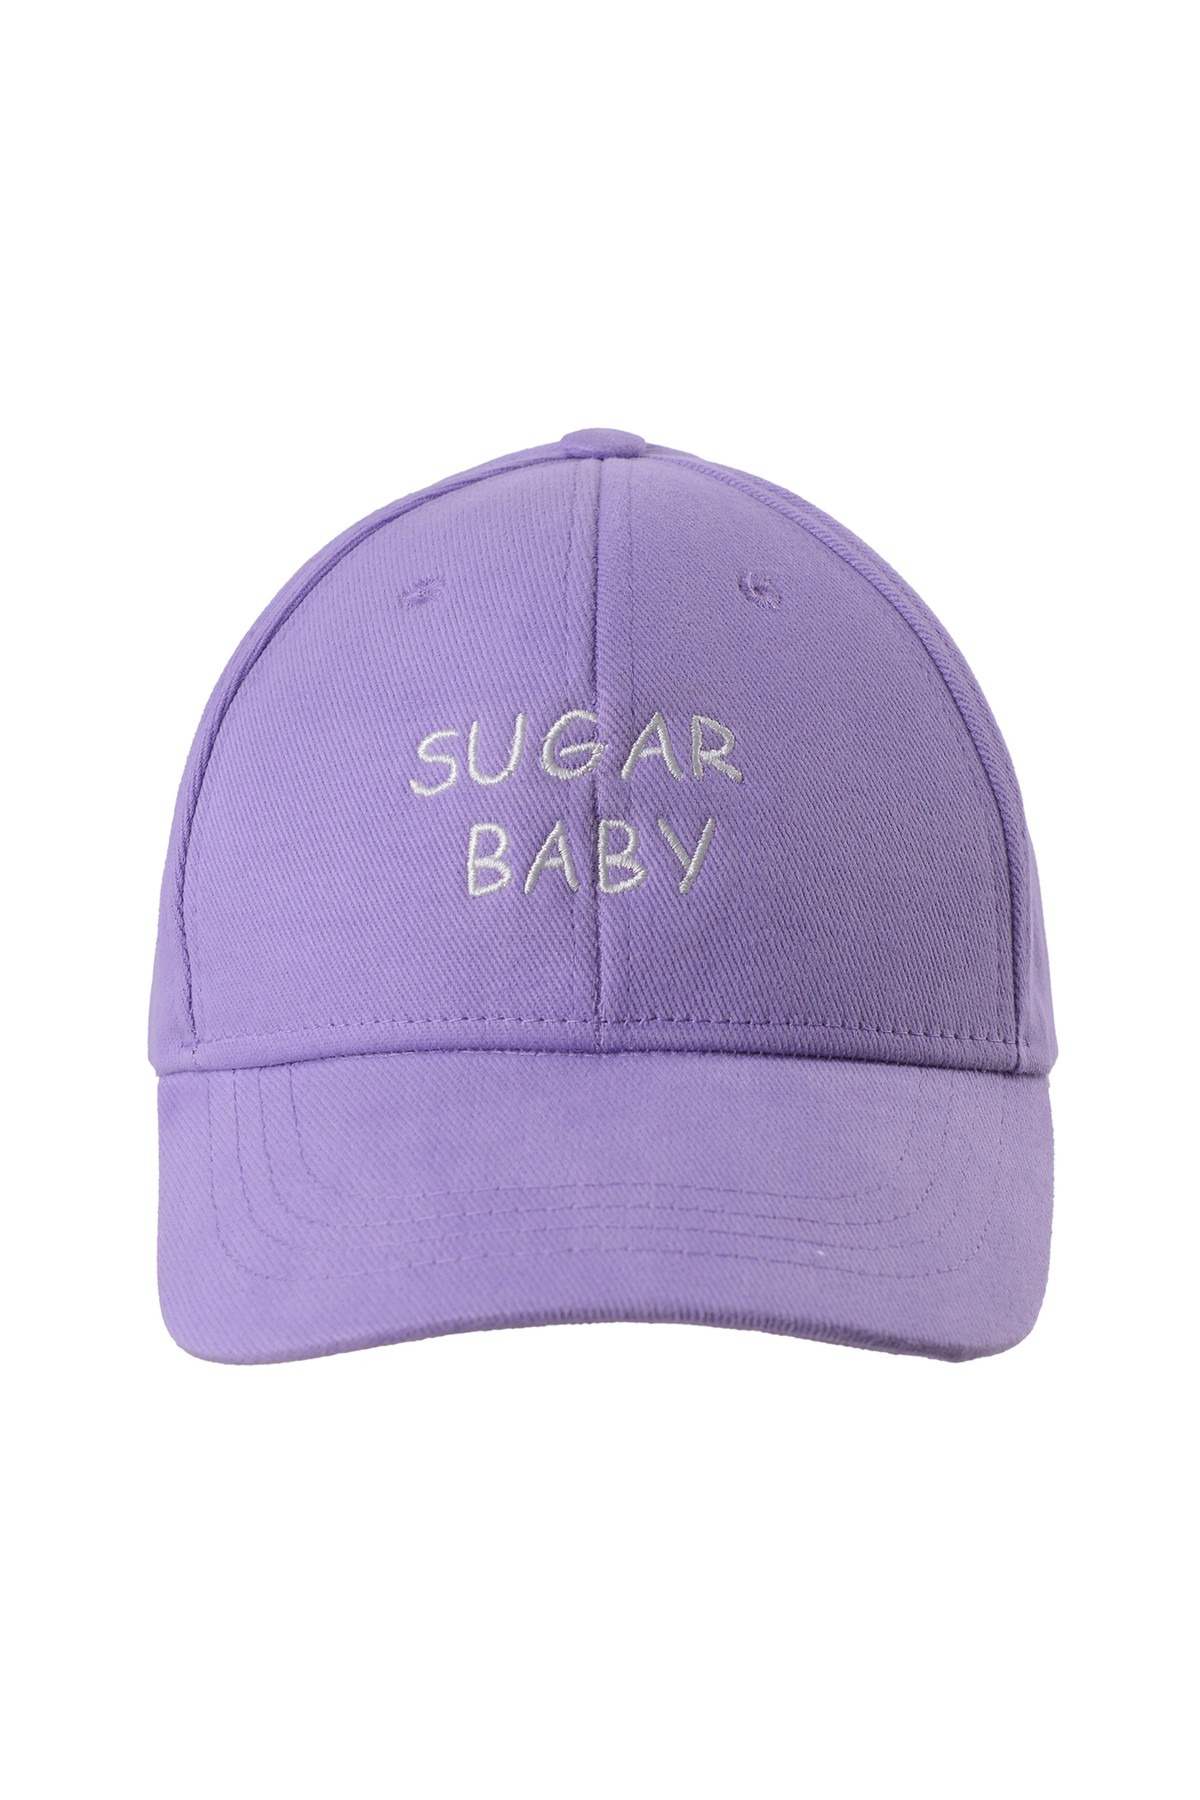 SUGAR BABY CAP